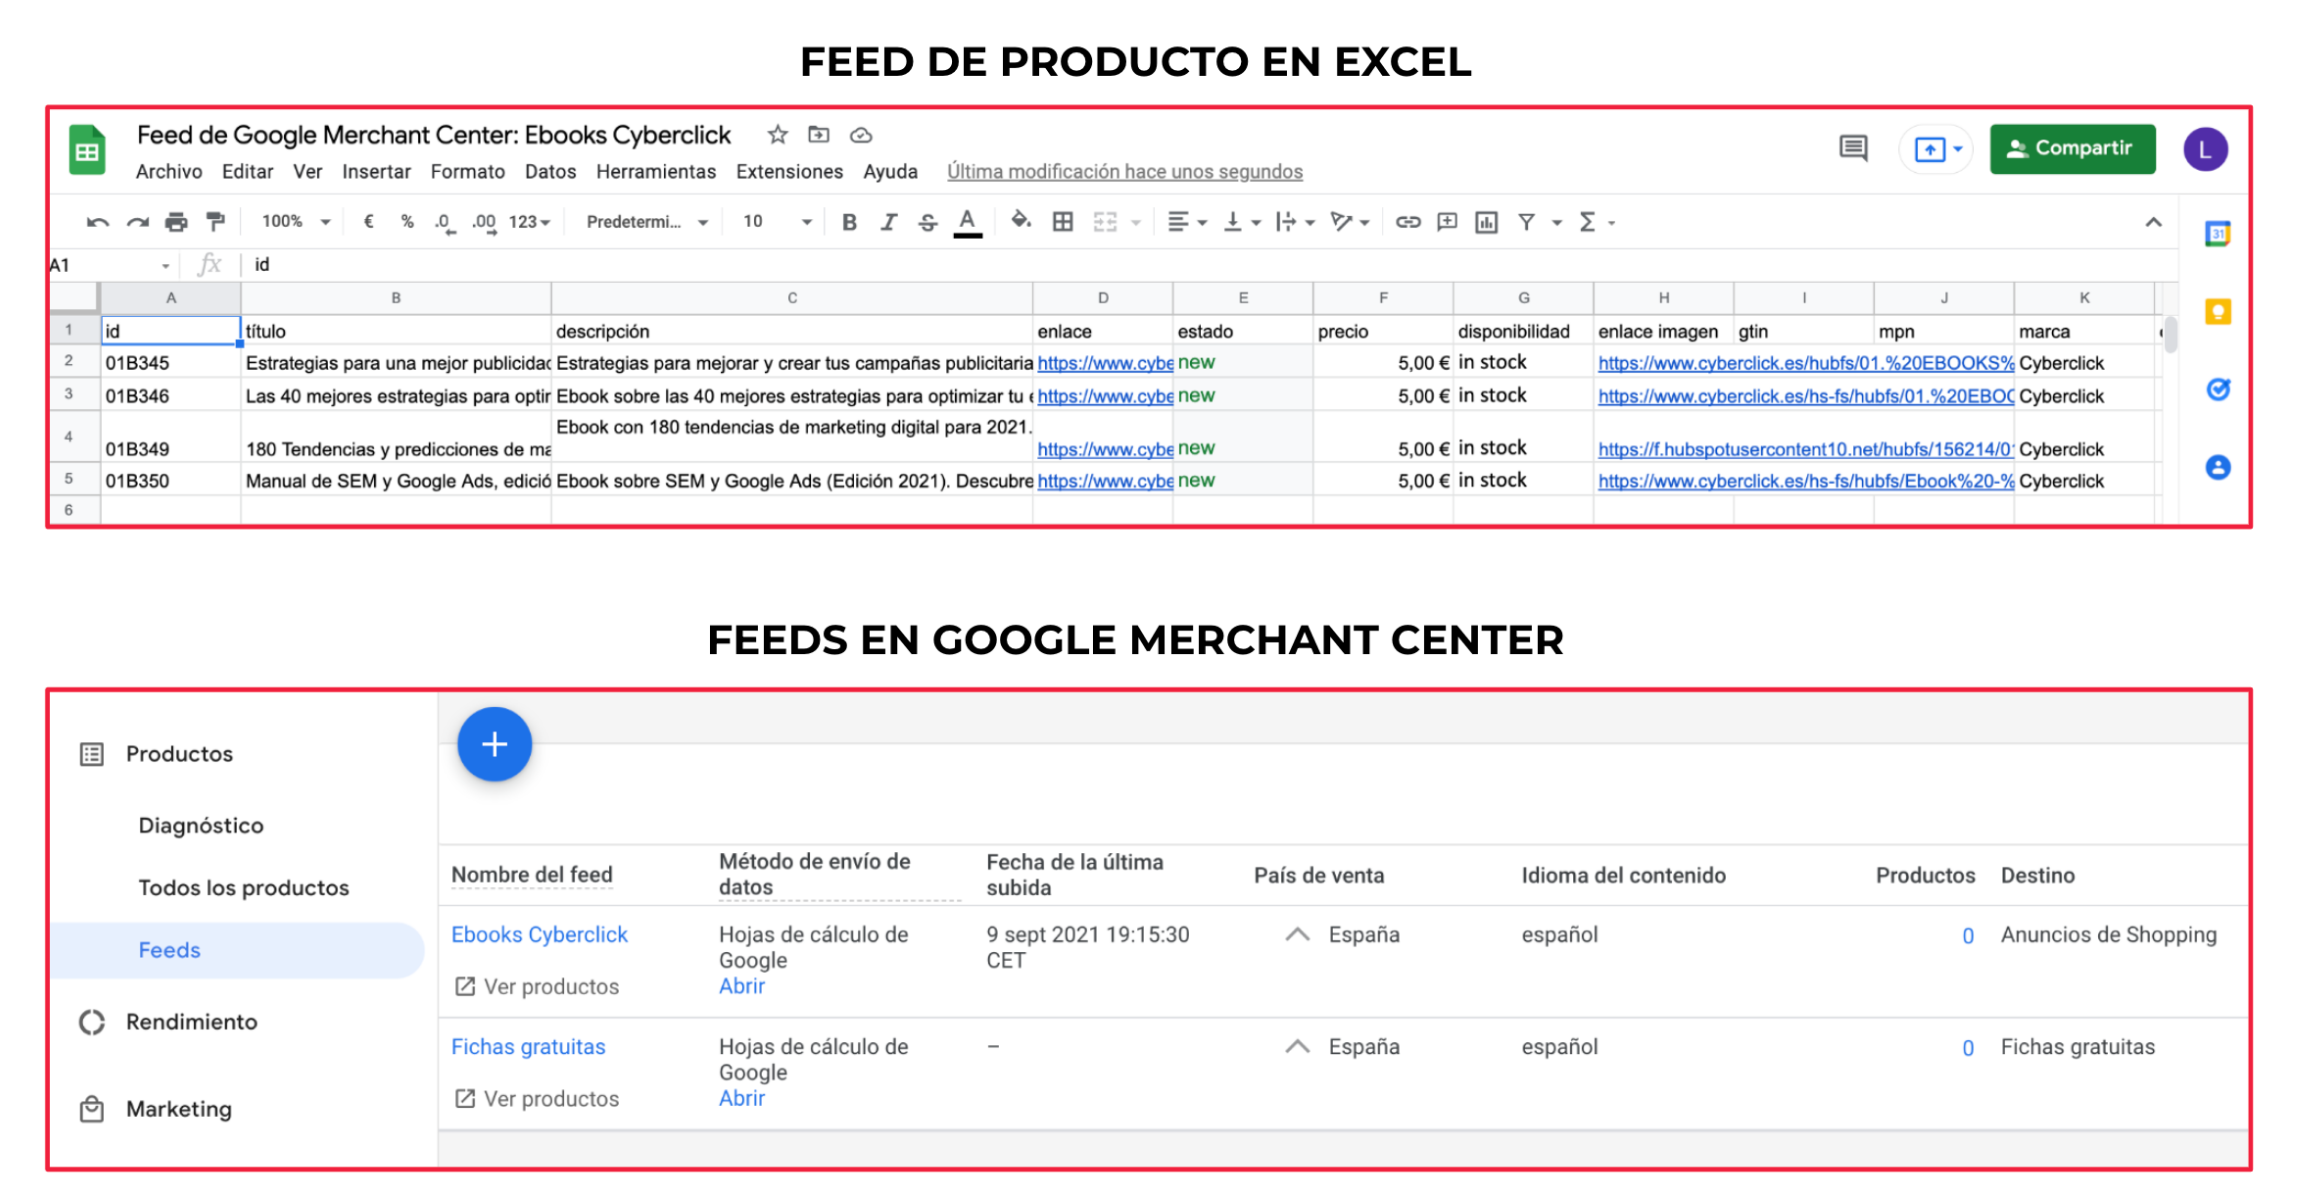 Como hacer un feed de producto en Google Merchant Center